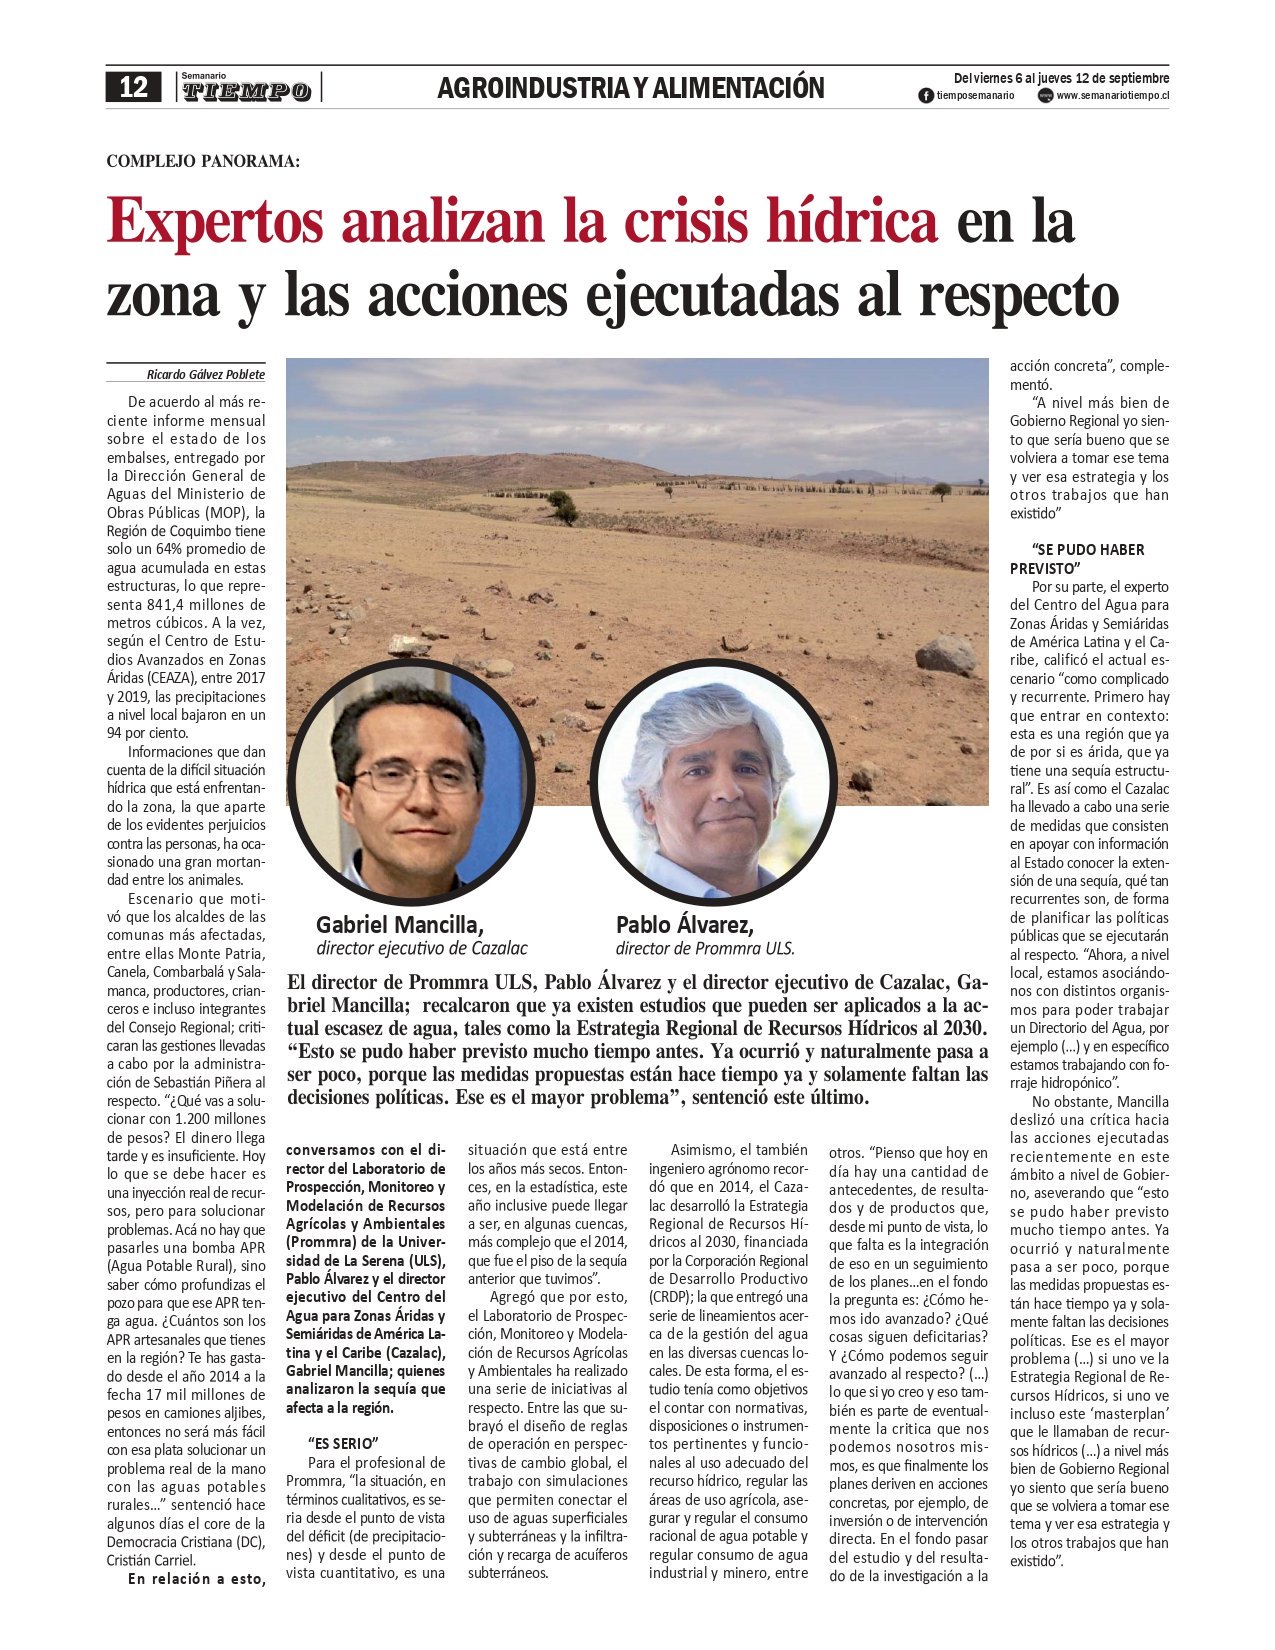 Crisis hídrica en la Región de Coquimbo